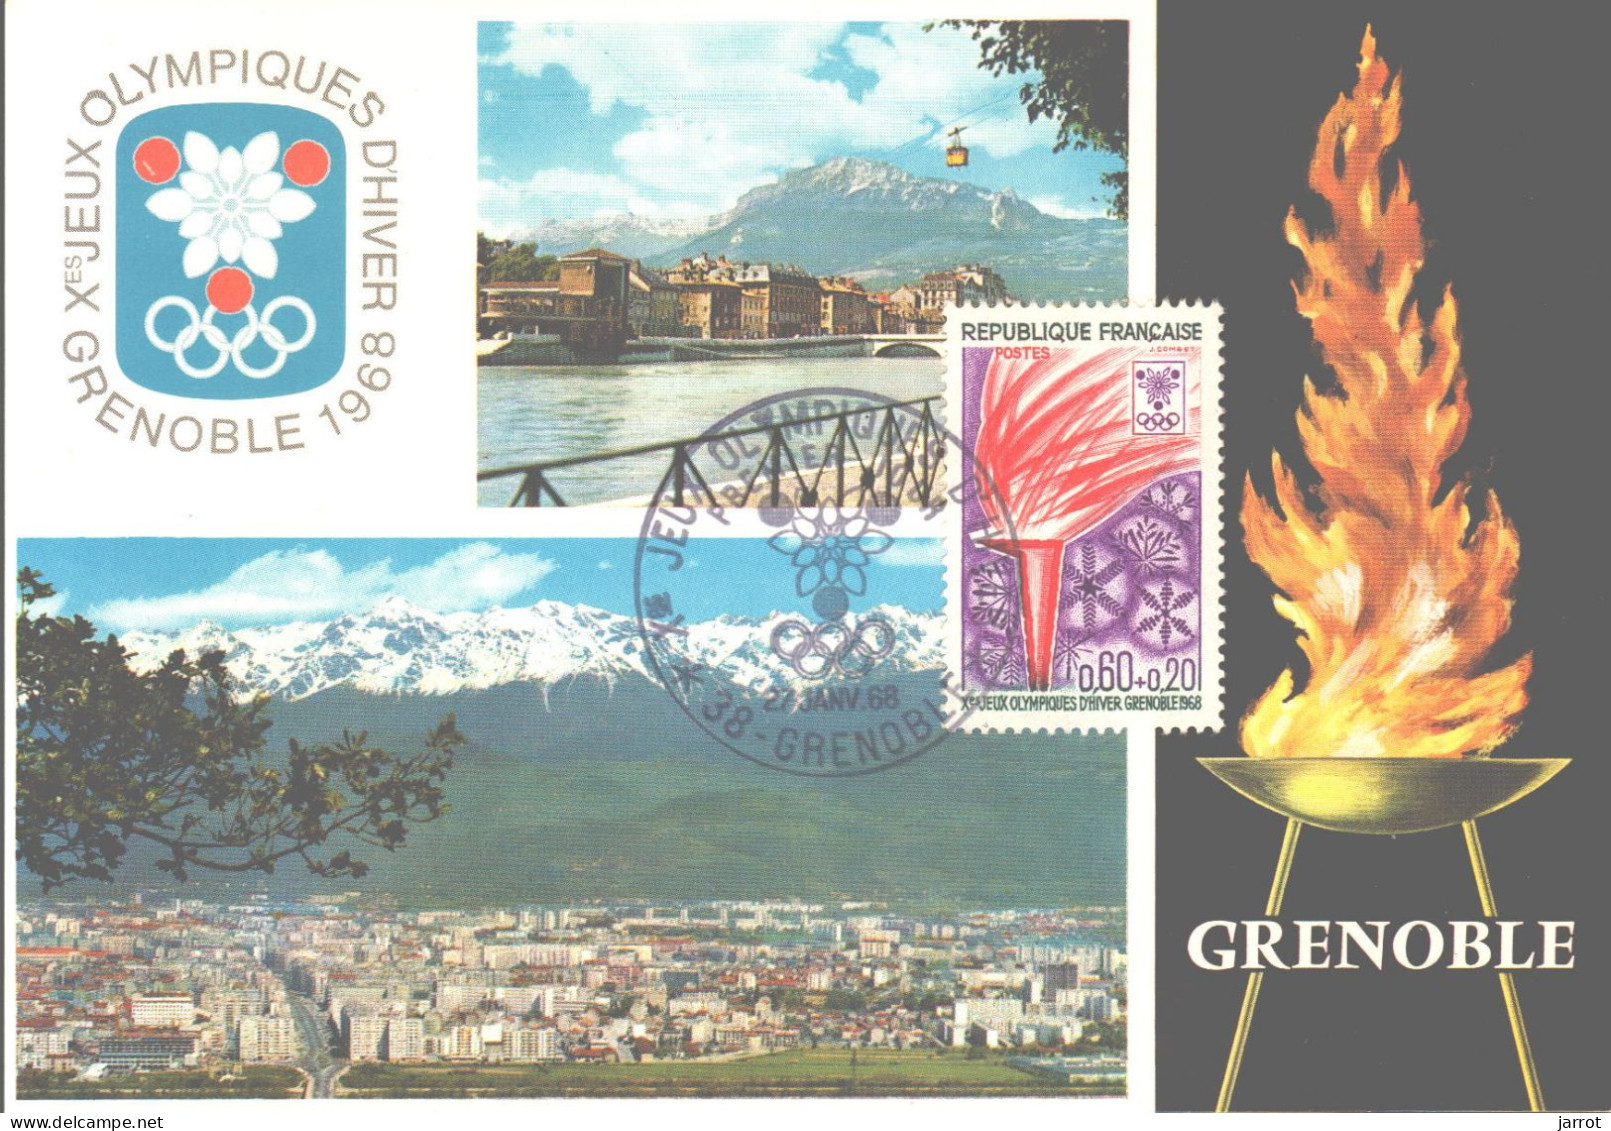 6 séries Fdc et cartes maxi JOde Grenoble (FDC,Inauguration et flamme) soit 30 souvenirs